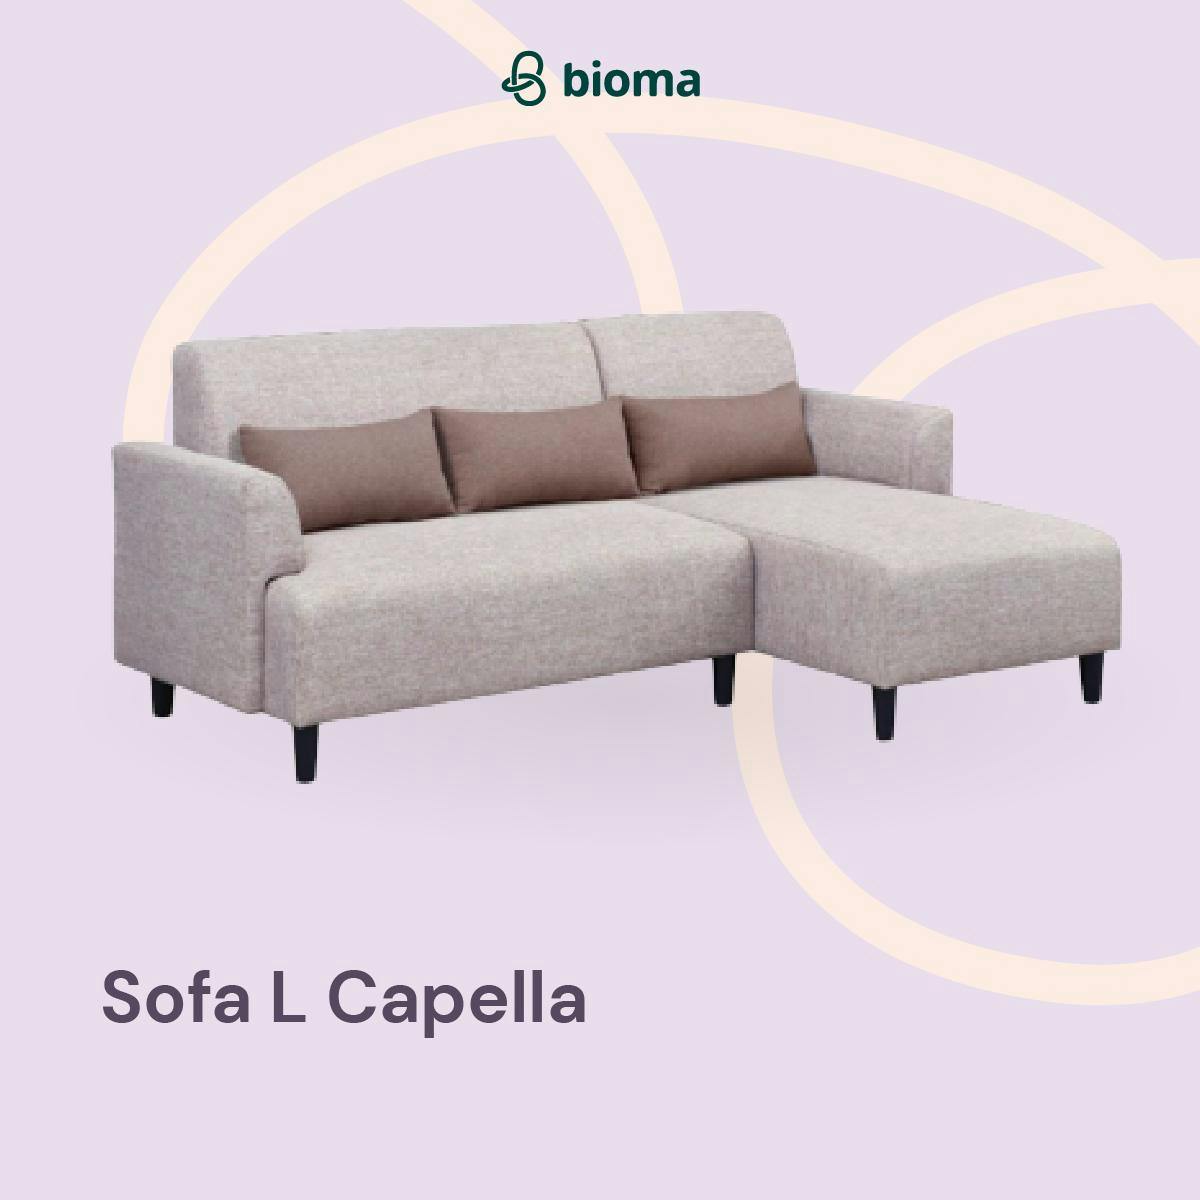 Sofa L Capella